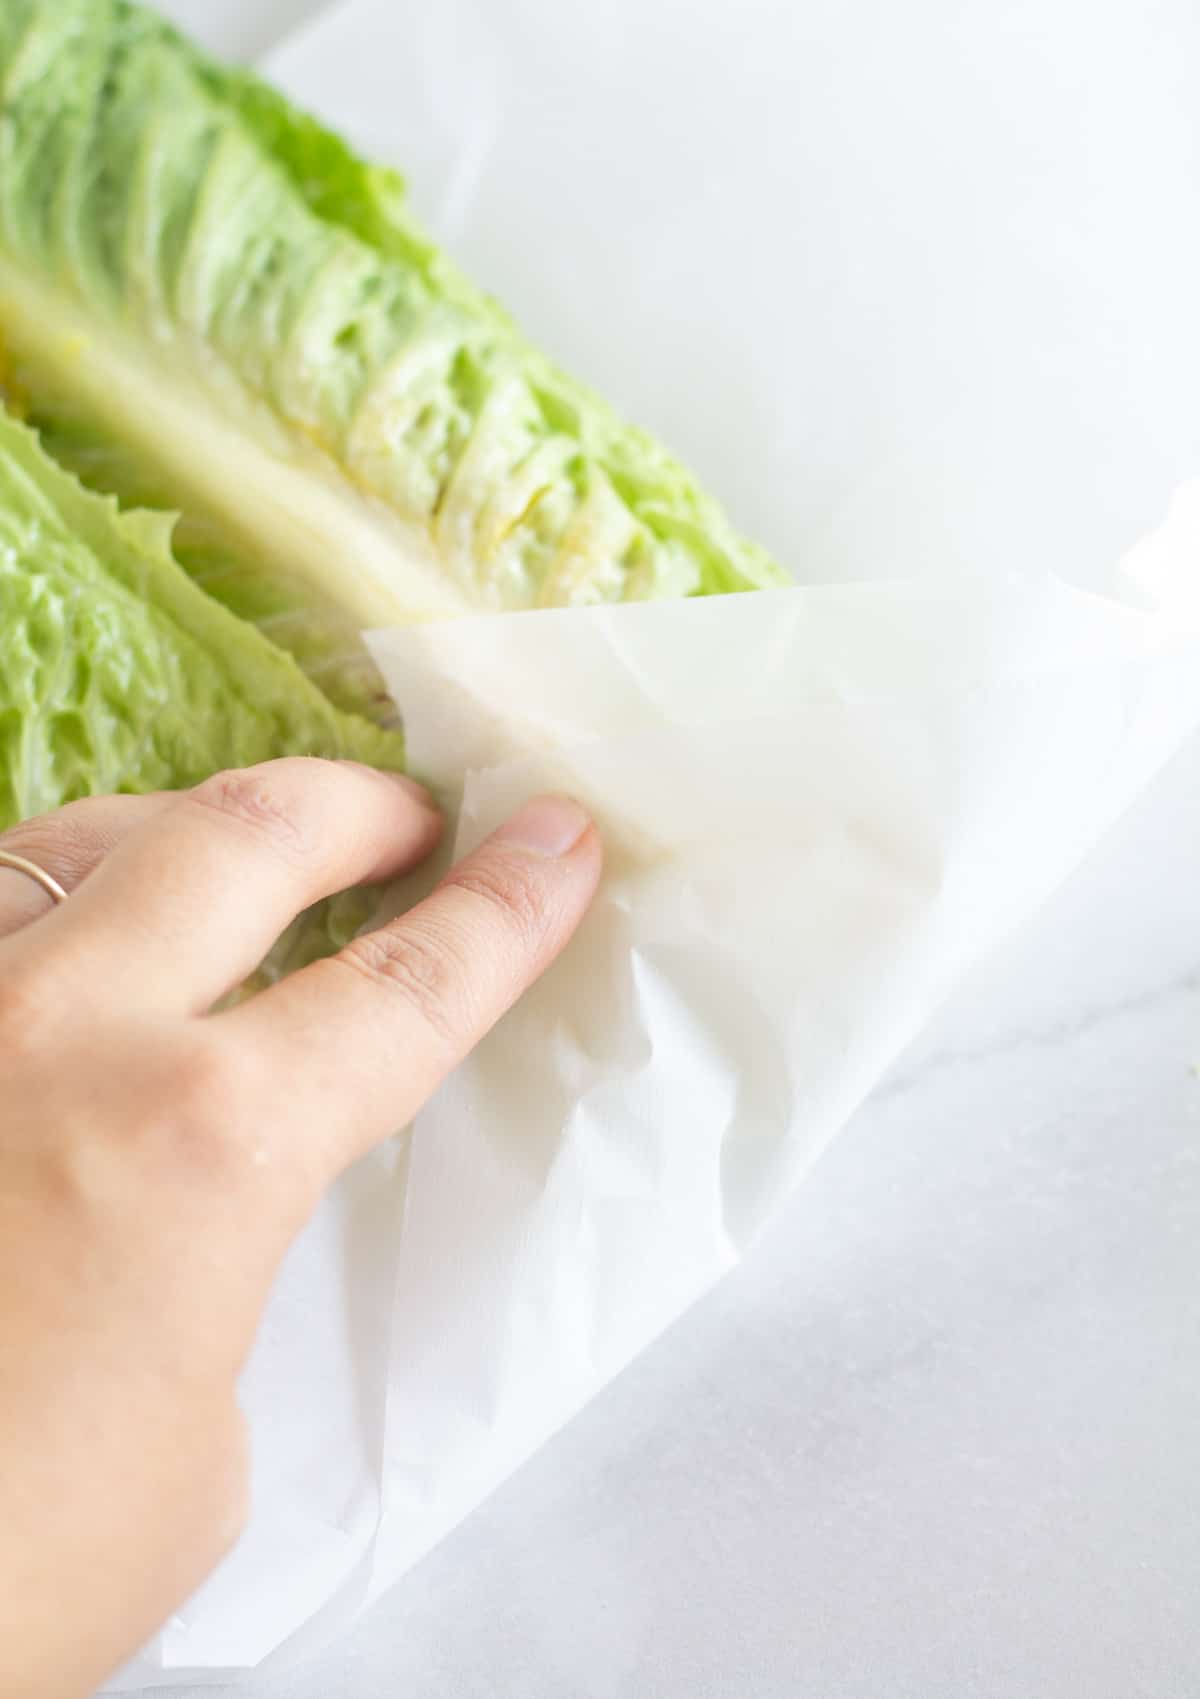 folding the bottom corner up over the lettuce